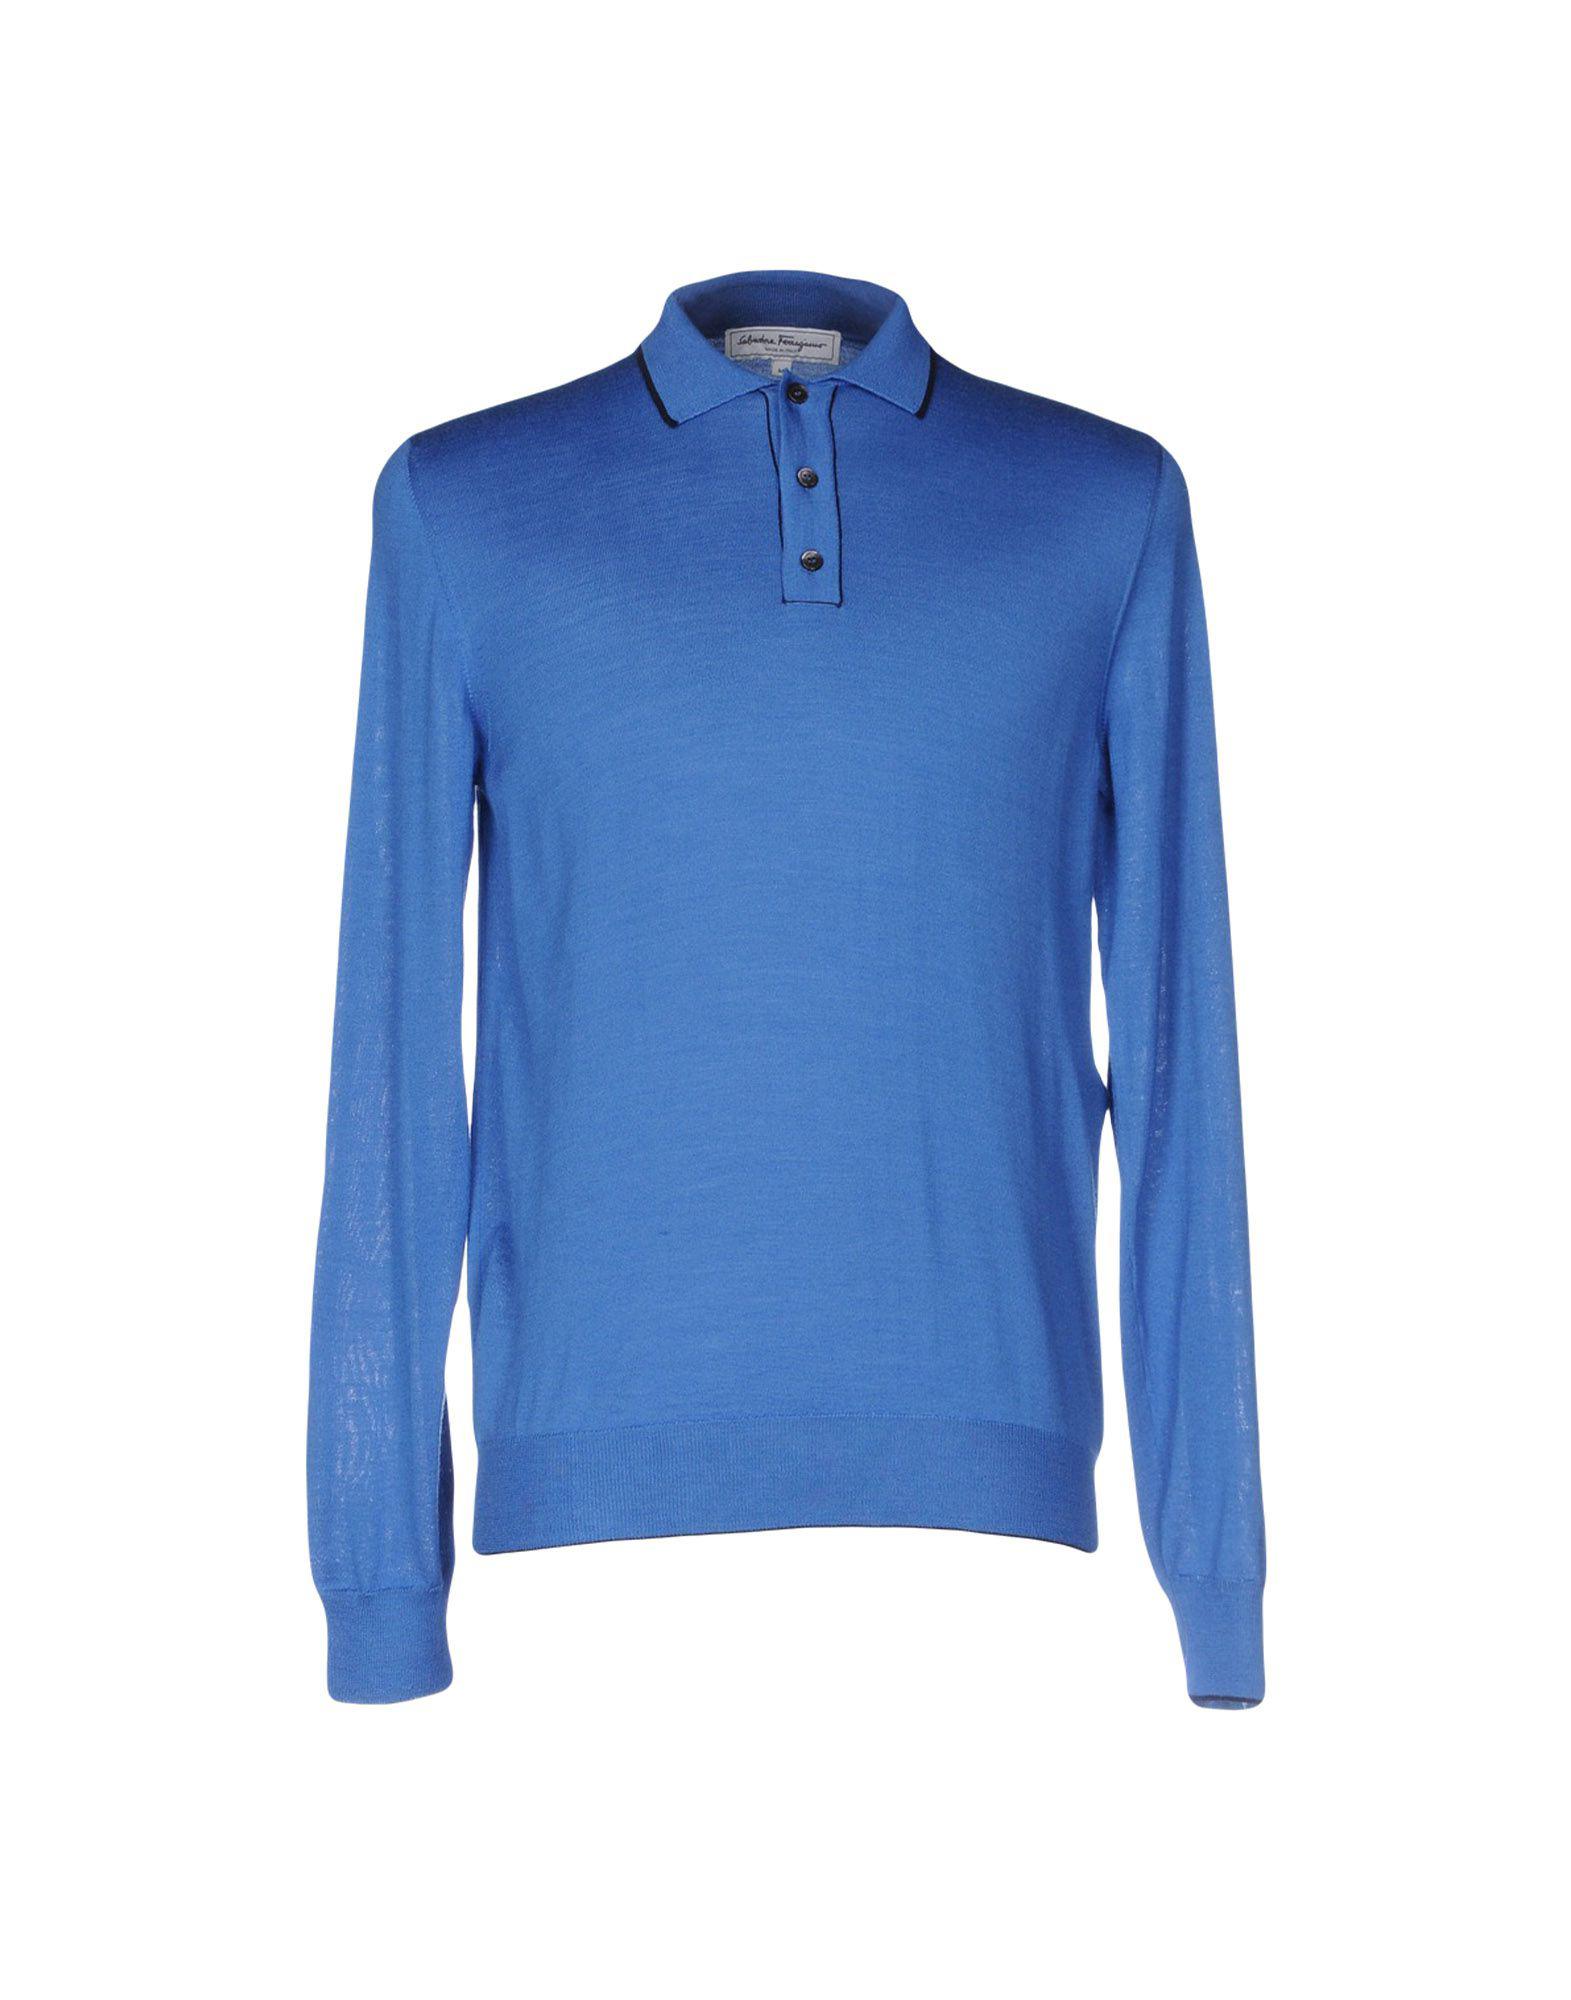 Lyst - Ferragamo Sweater in Blue